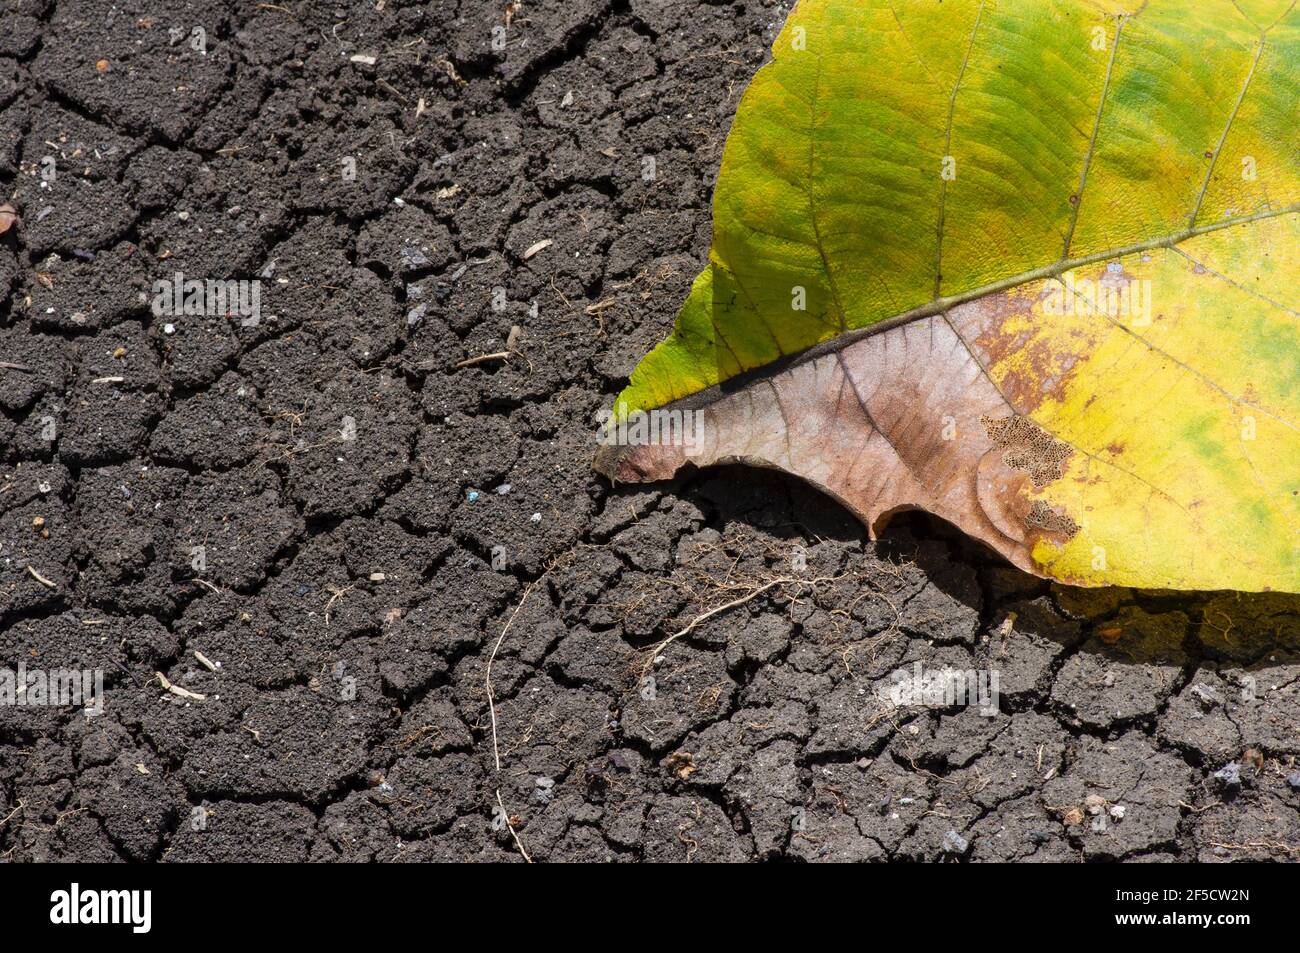 Ein trockenes Teakblatt auf dem trockenen mediterranen Boden, in Gunung Kidul, Yogyakarta, Indonesien. Naturschutzkonzept. Stockfoto